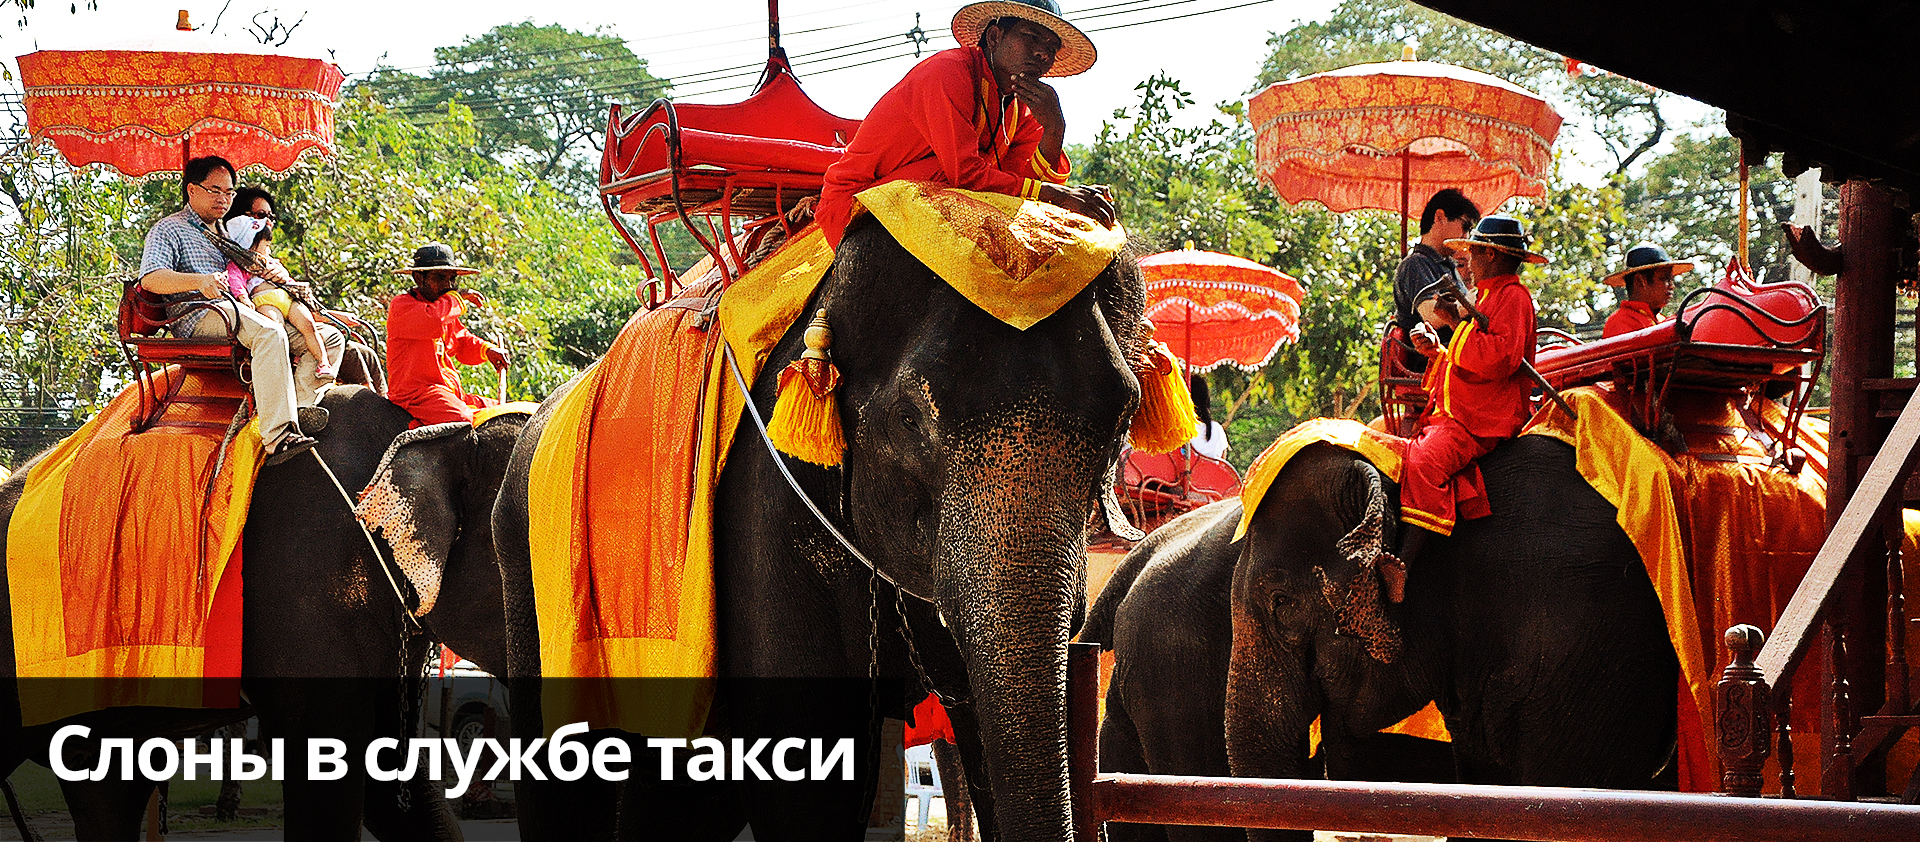 Такси на слонах